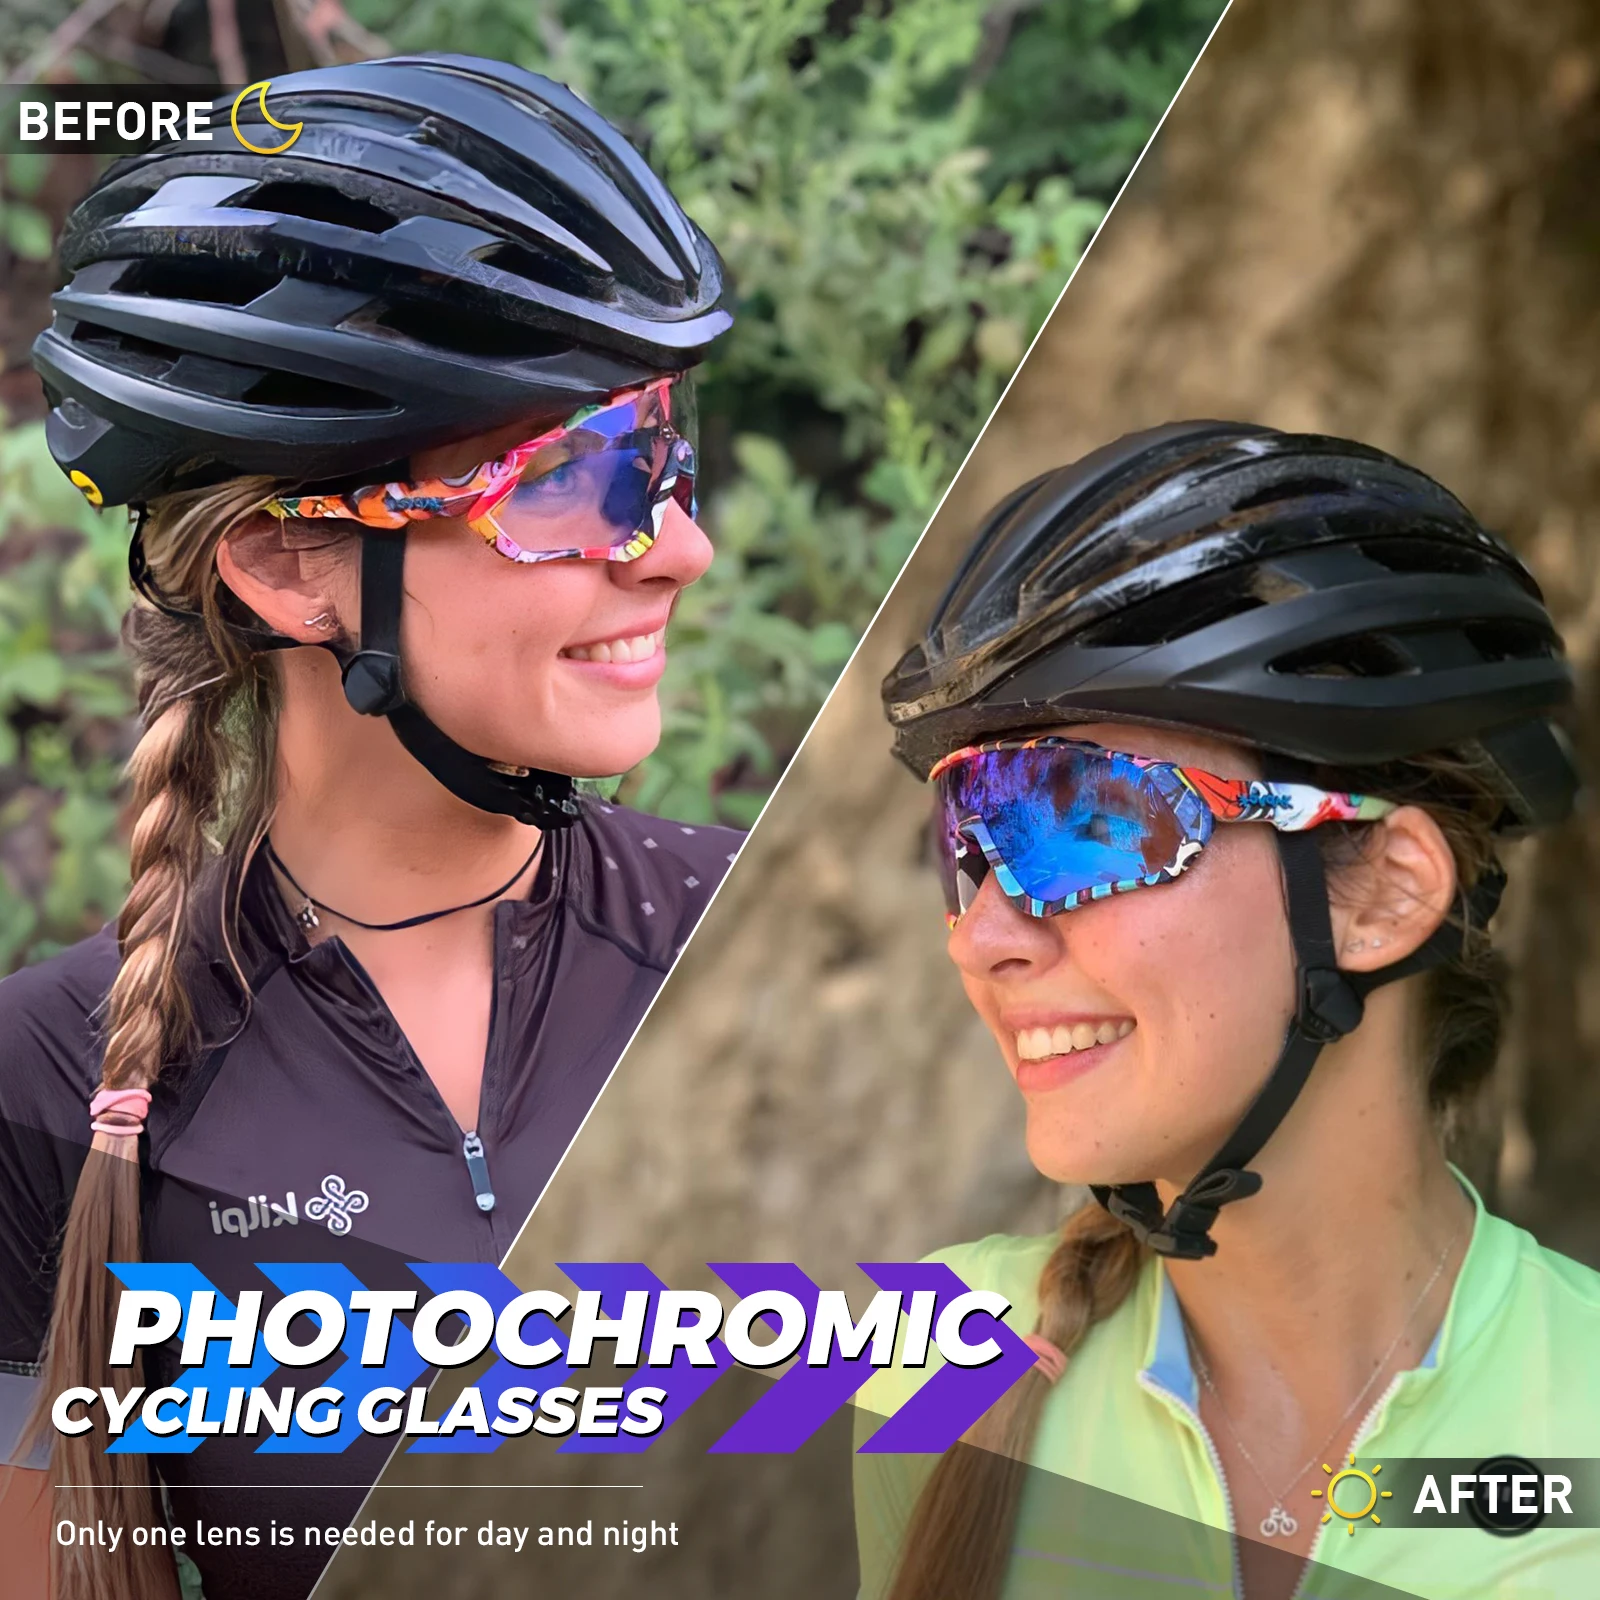 Gafas Fotocromáticas Coloridas – BiciCroma